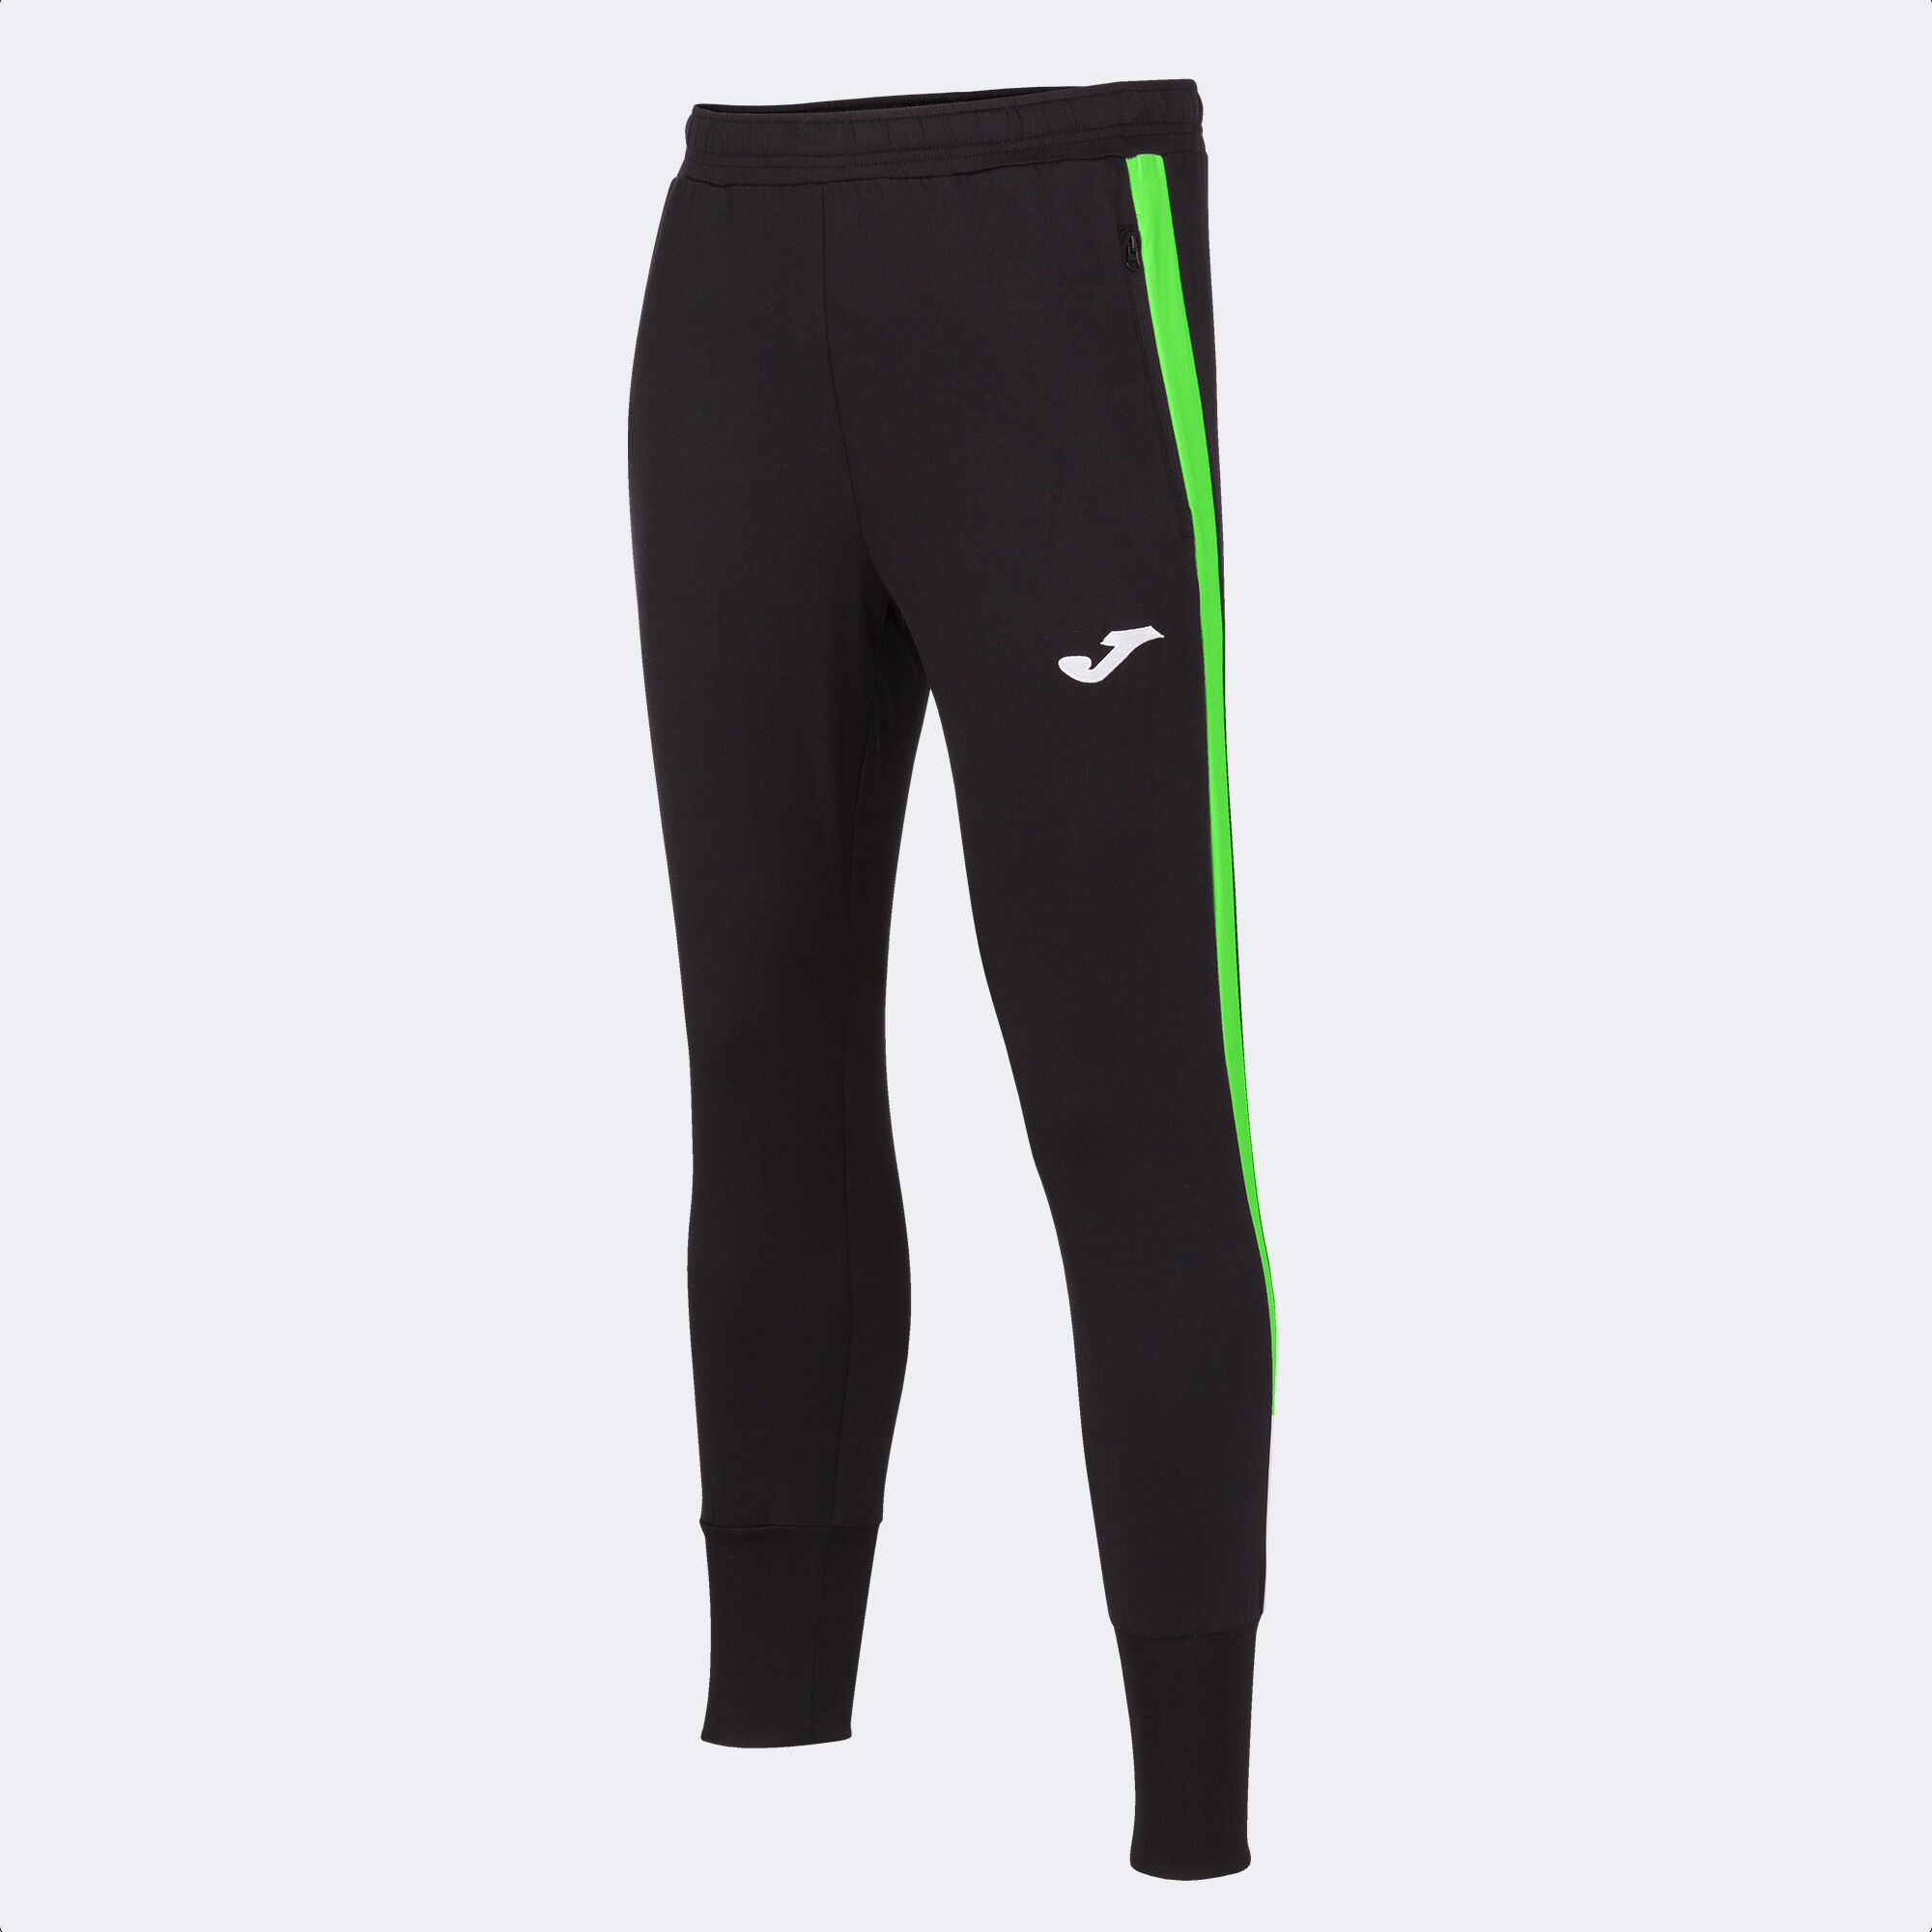 Długie spodnie mężczyźni Advance czarny fluorescencyjny zielony